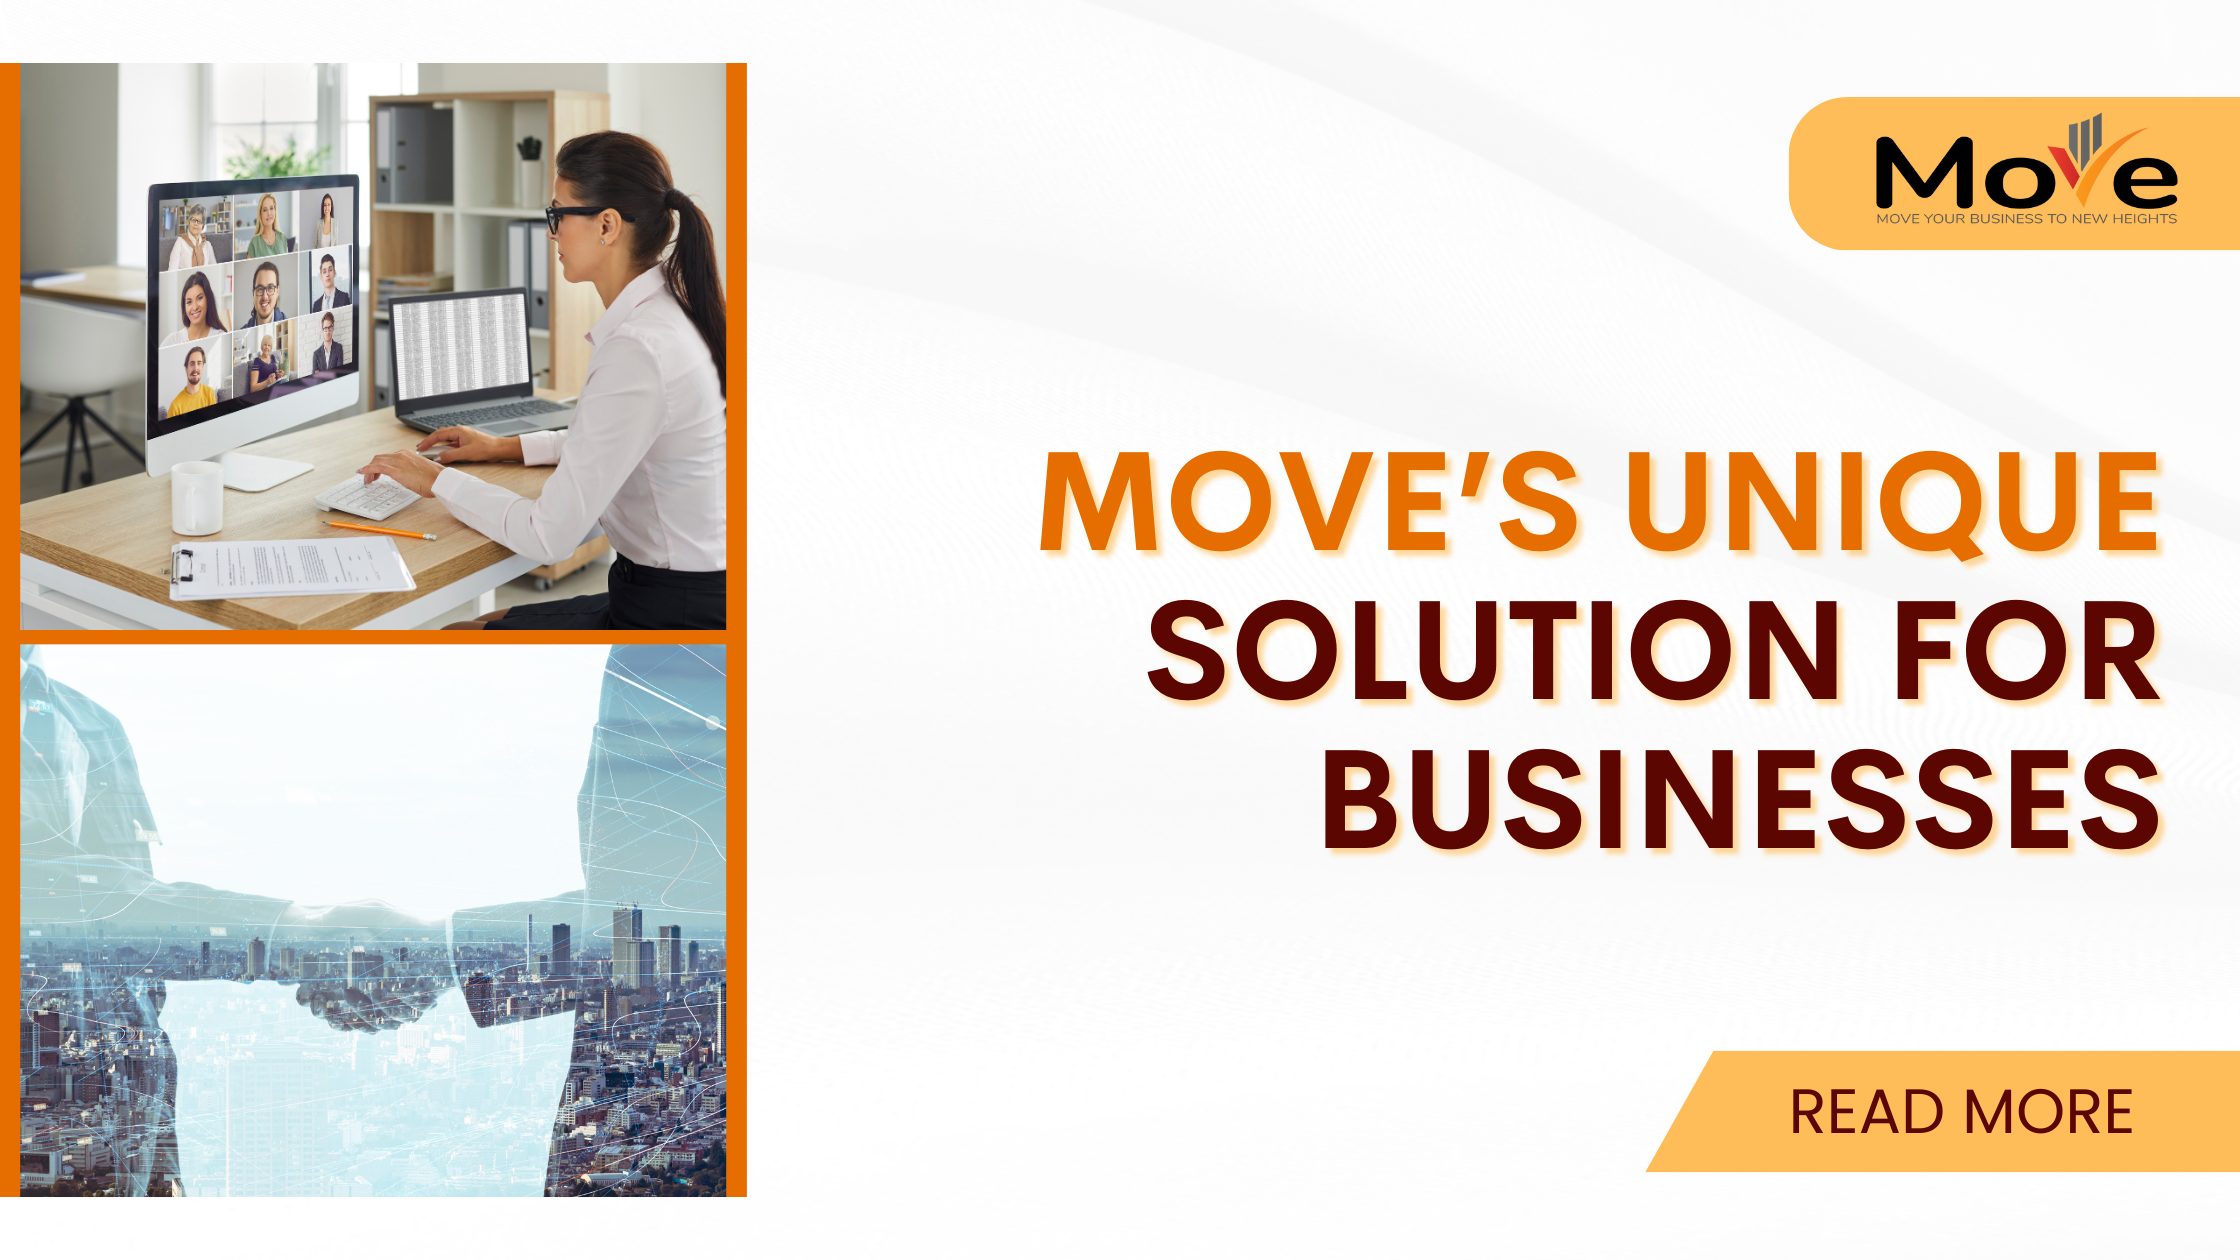 MOVE's unique solution for businesses